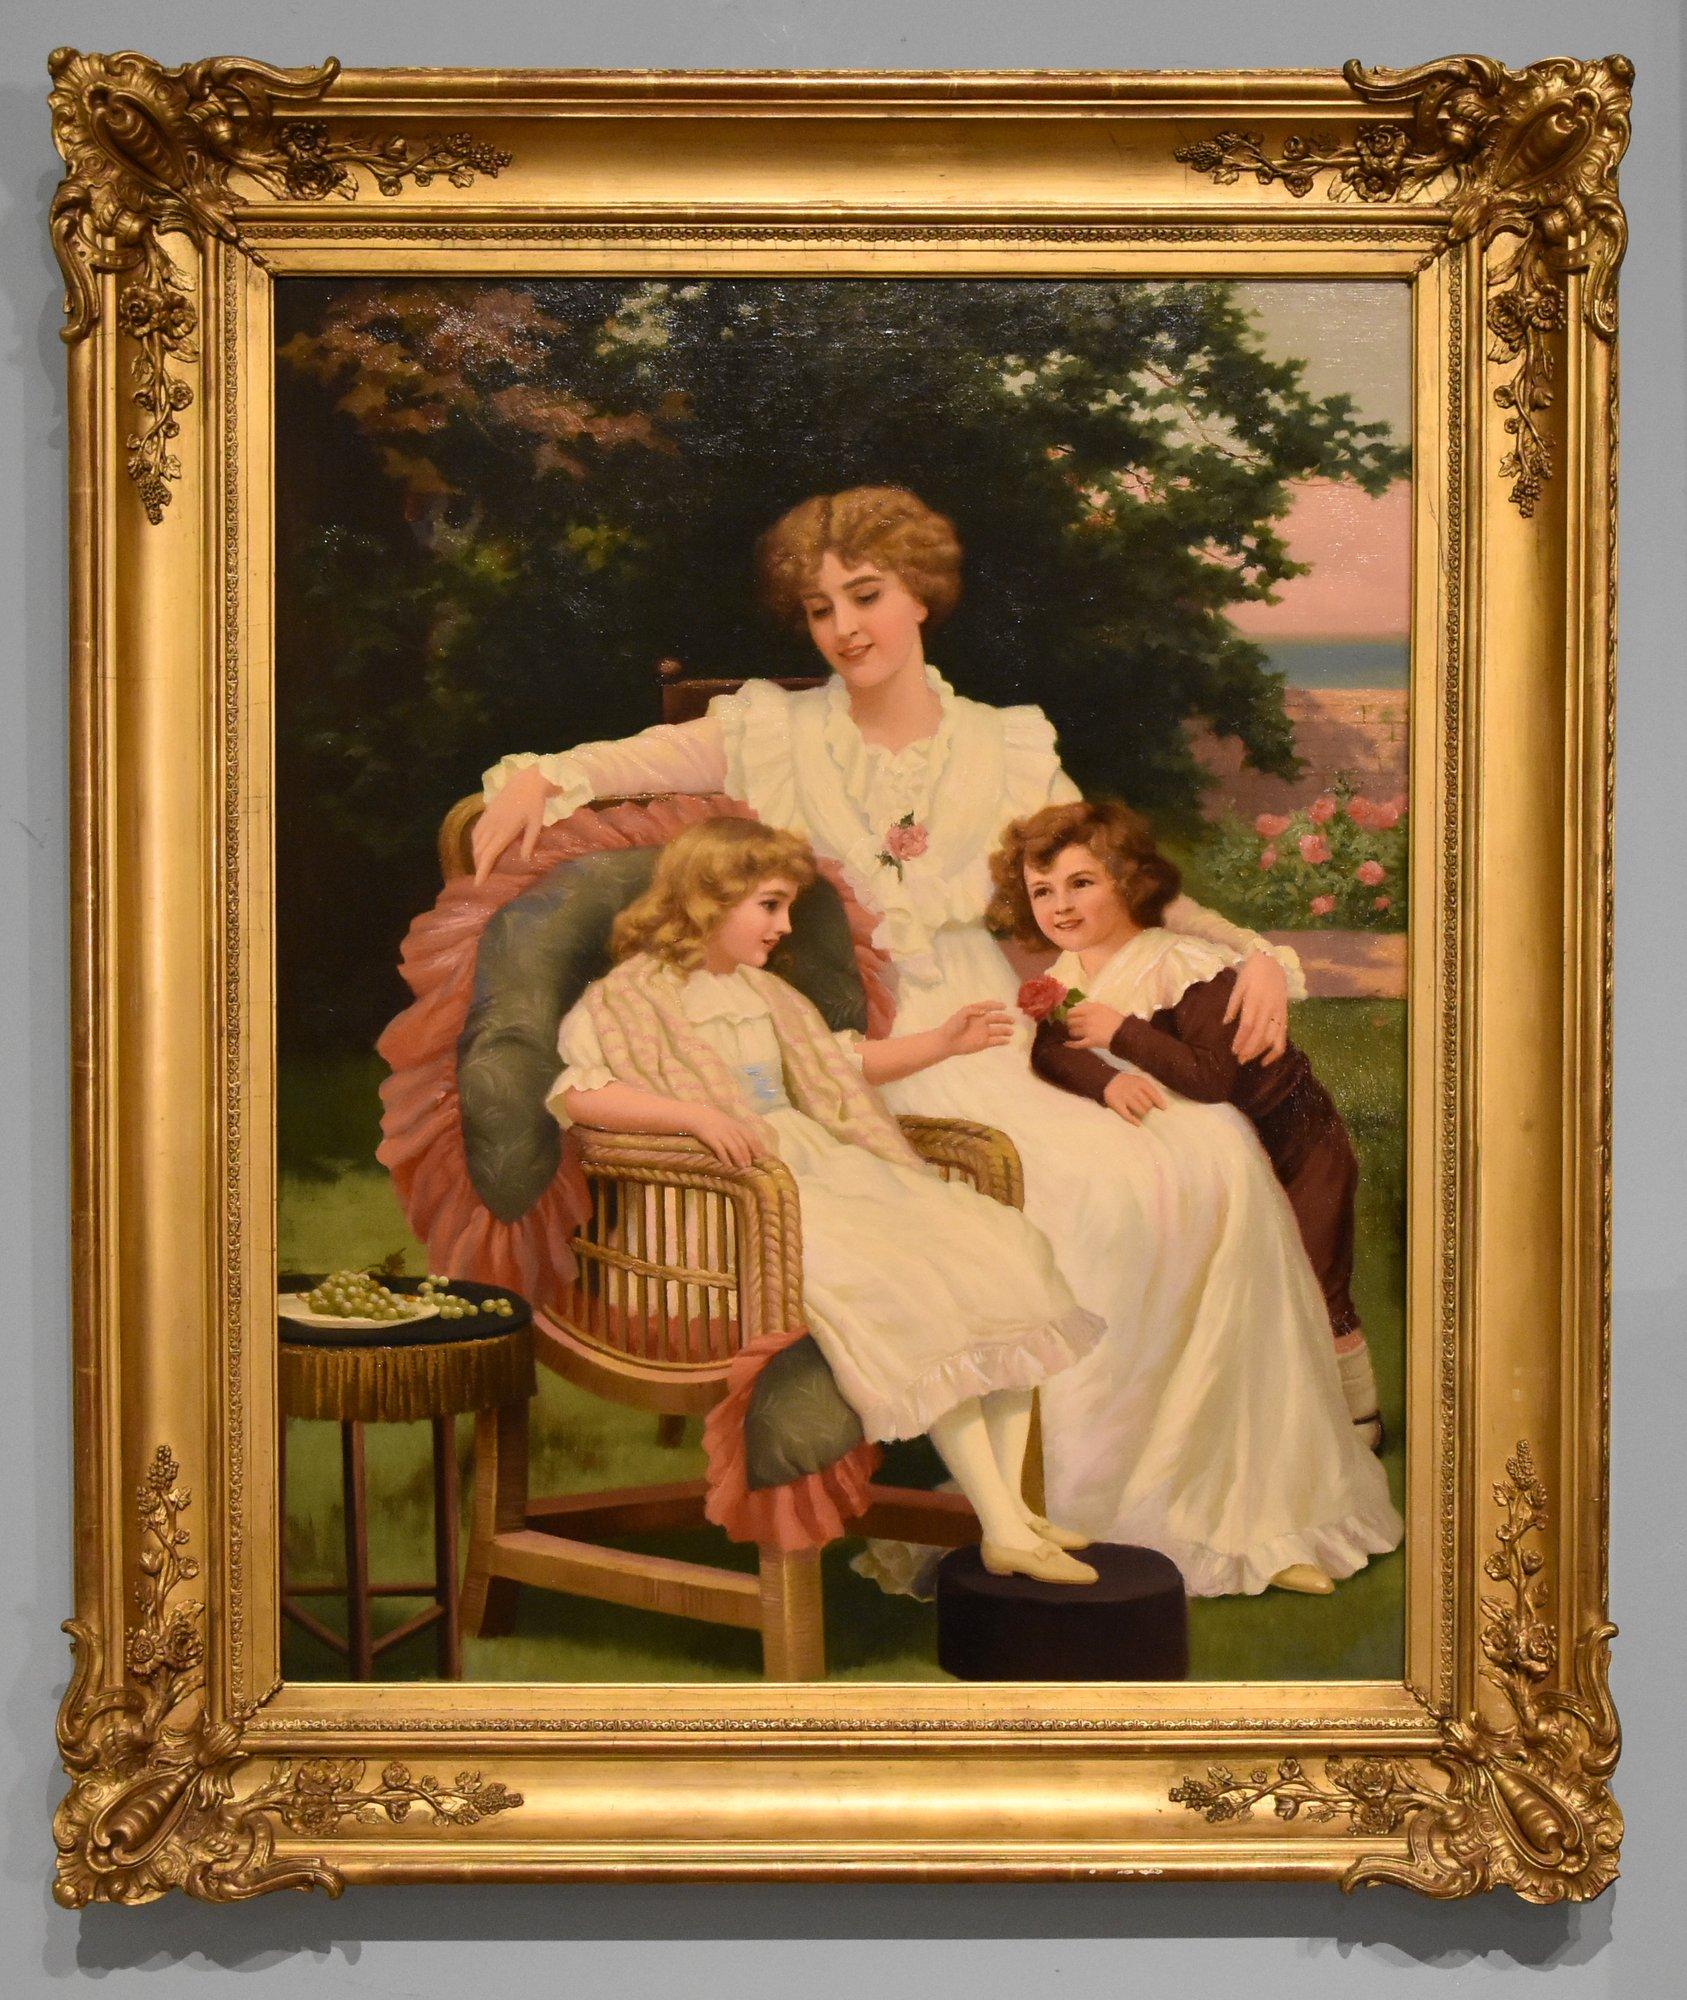 Peinture à l'huile de Herbert Bland Sparks "Happy Families" 1813 - 1901 Fils d'un marin londonien Peintre et graveur, il a exposé à la Royal Academy et à Liverpool Huile sur toile. Signé. 

Dimensions sans cadre 30  x 25 pouces
Dimensions encadré 38